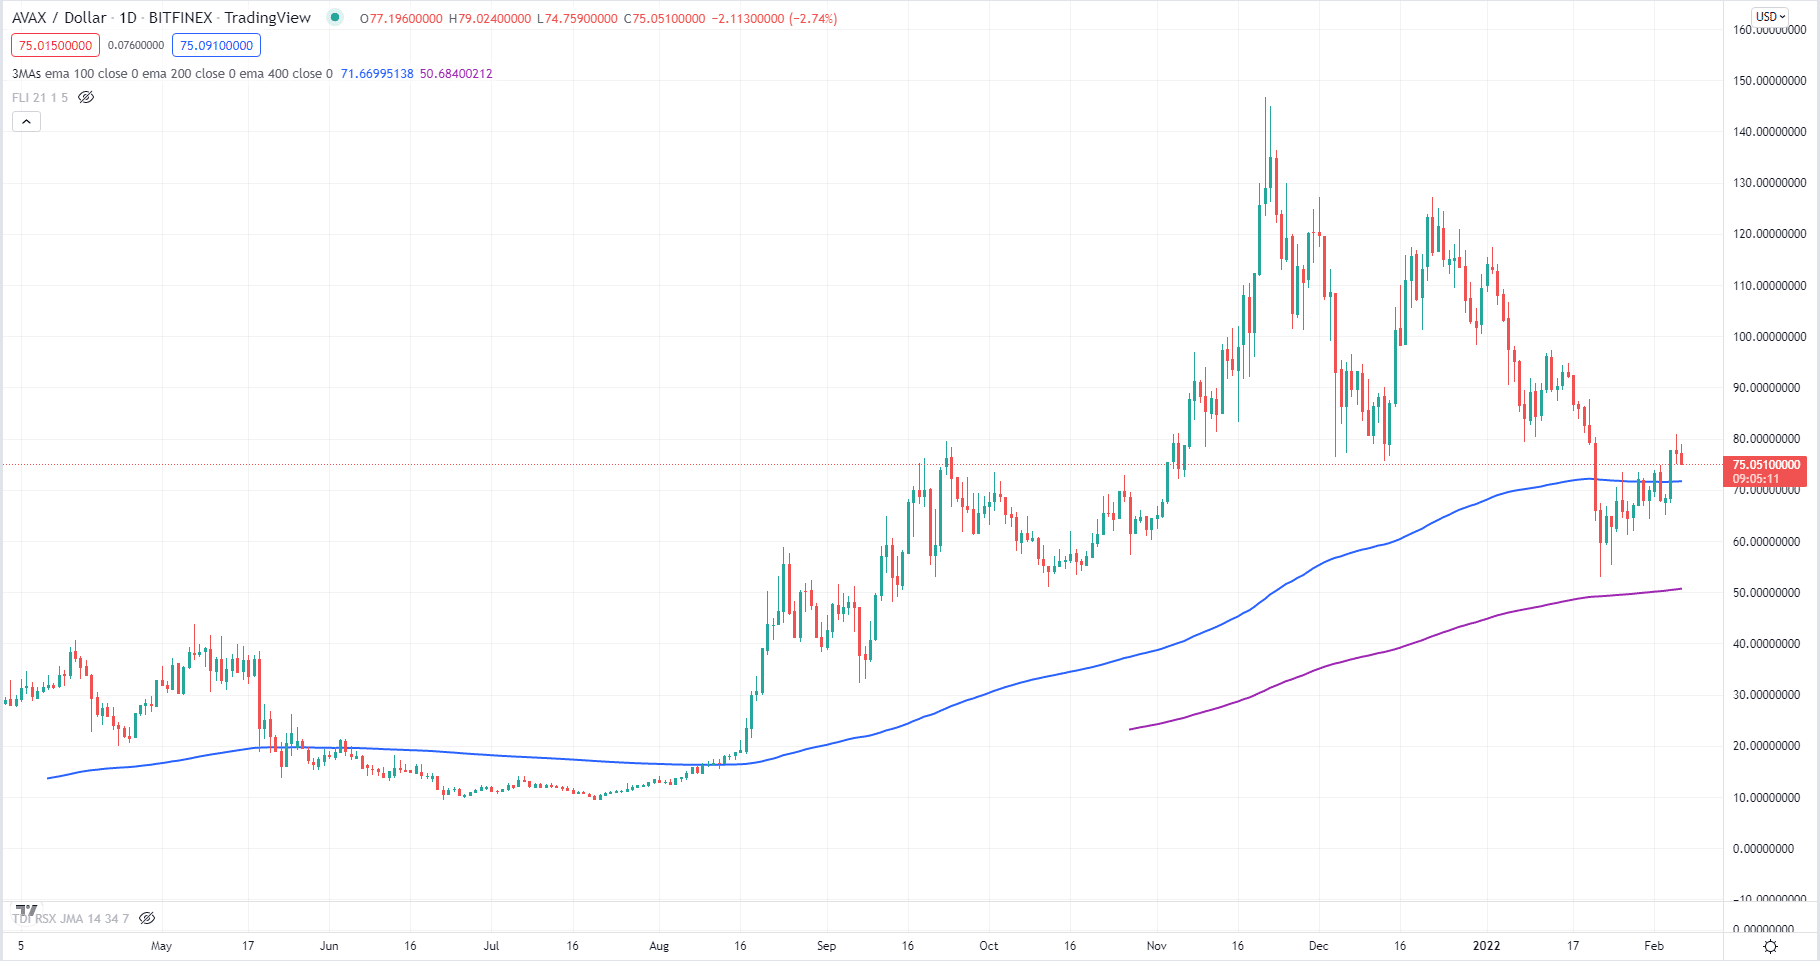 AVAX/USD daily chart